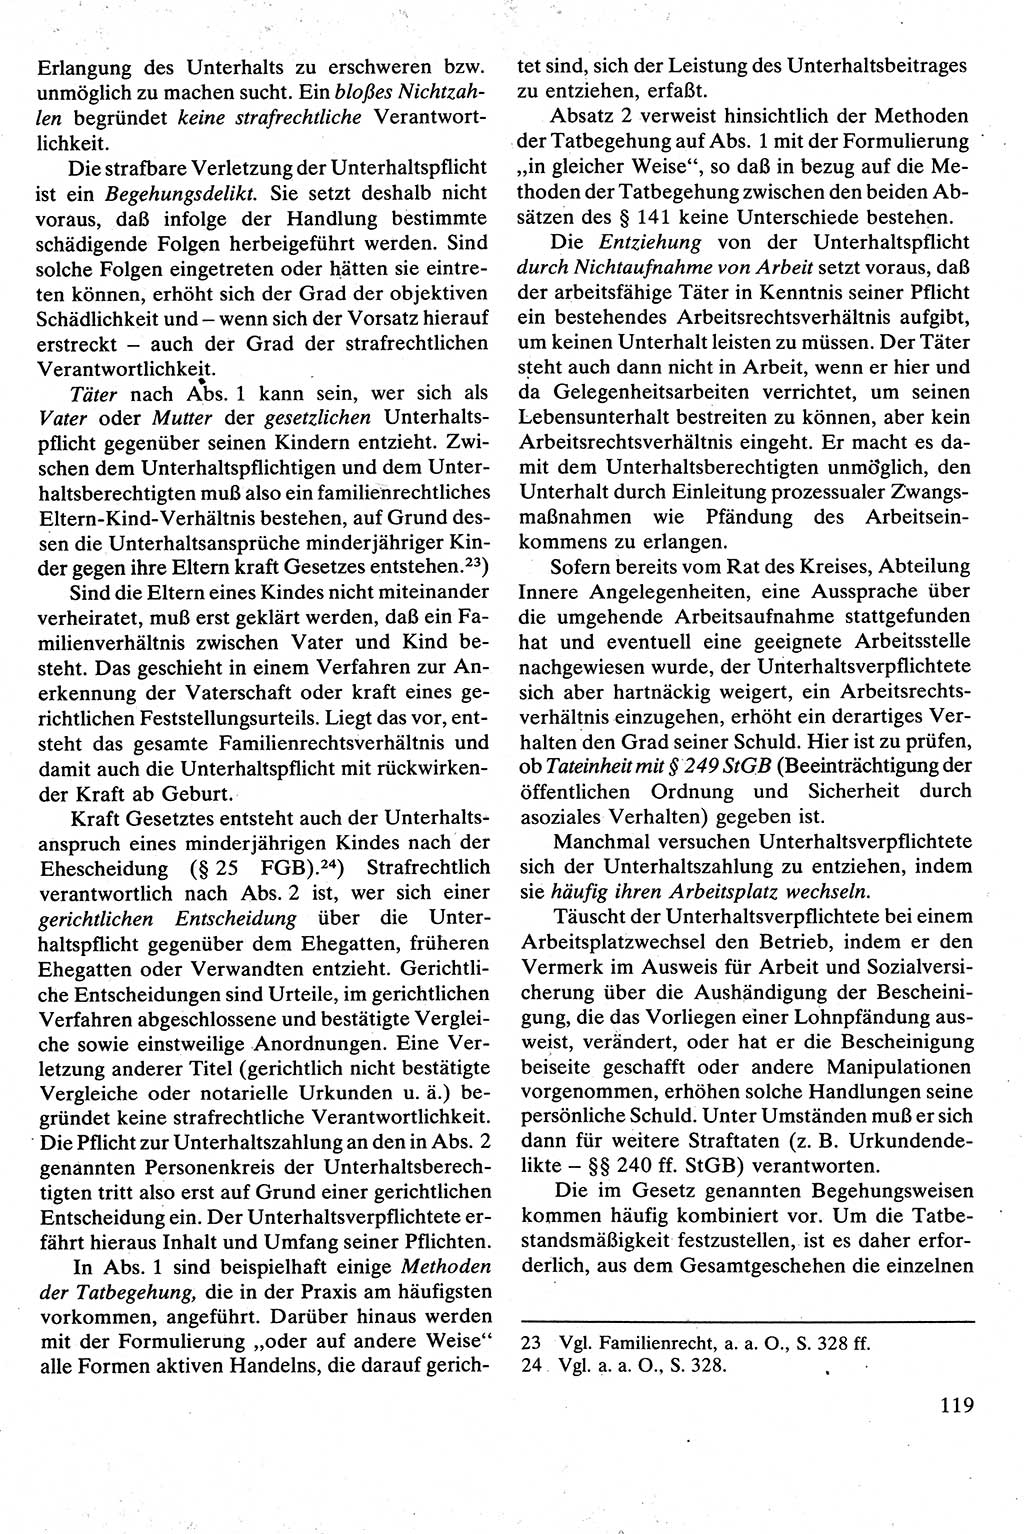 Strafrecht [Deutsche Demokratische Republik (DDR)], Besonderer Teil, Lehrbuch 1981, Seite 119 (Strafr. DDR BT Lb. 1981, S. 119)